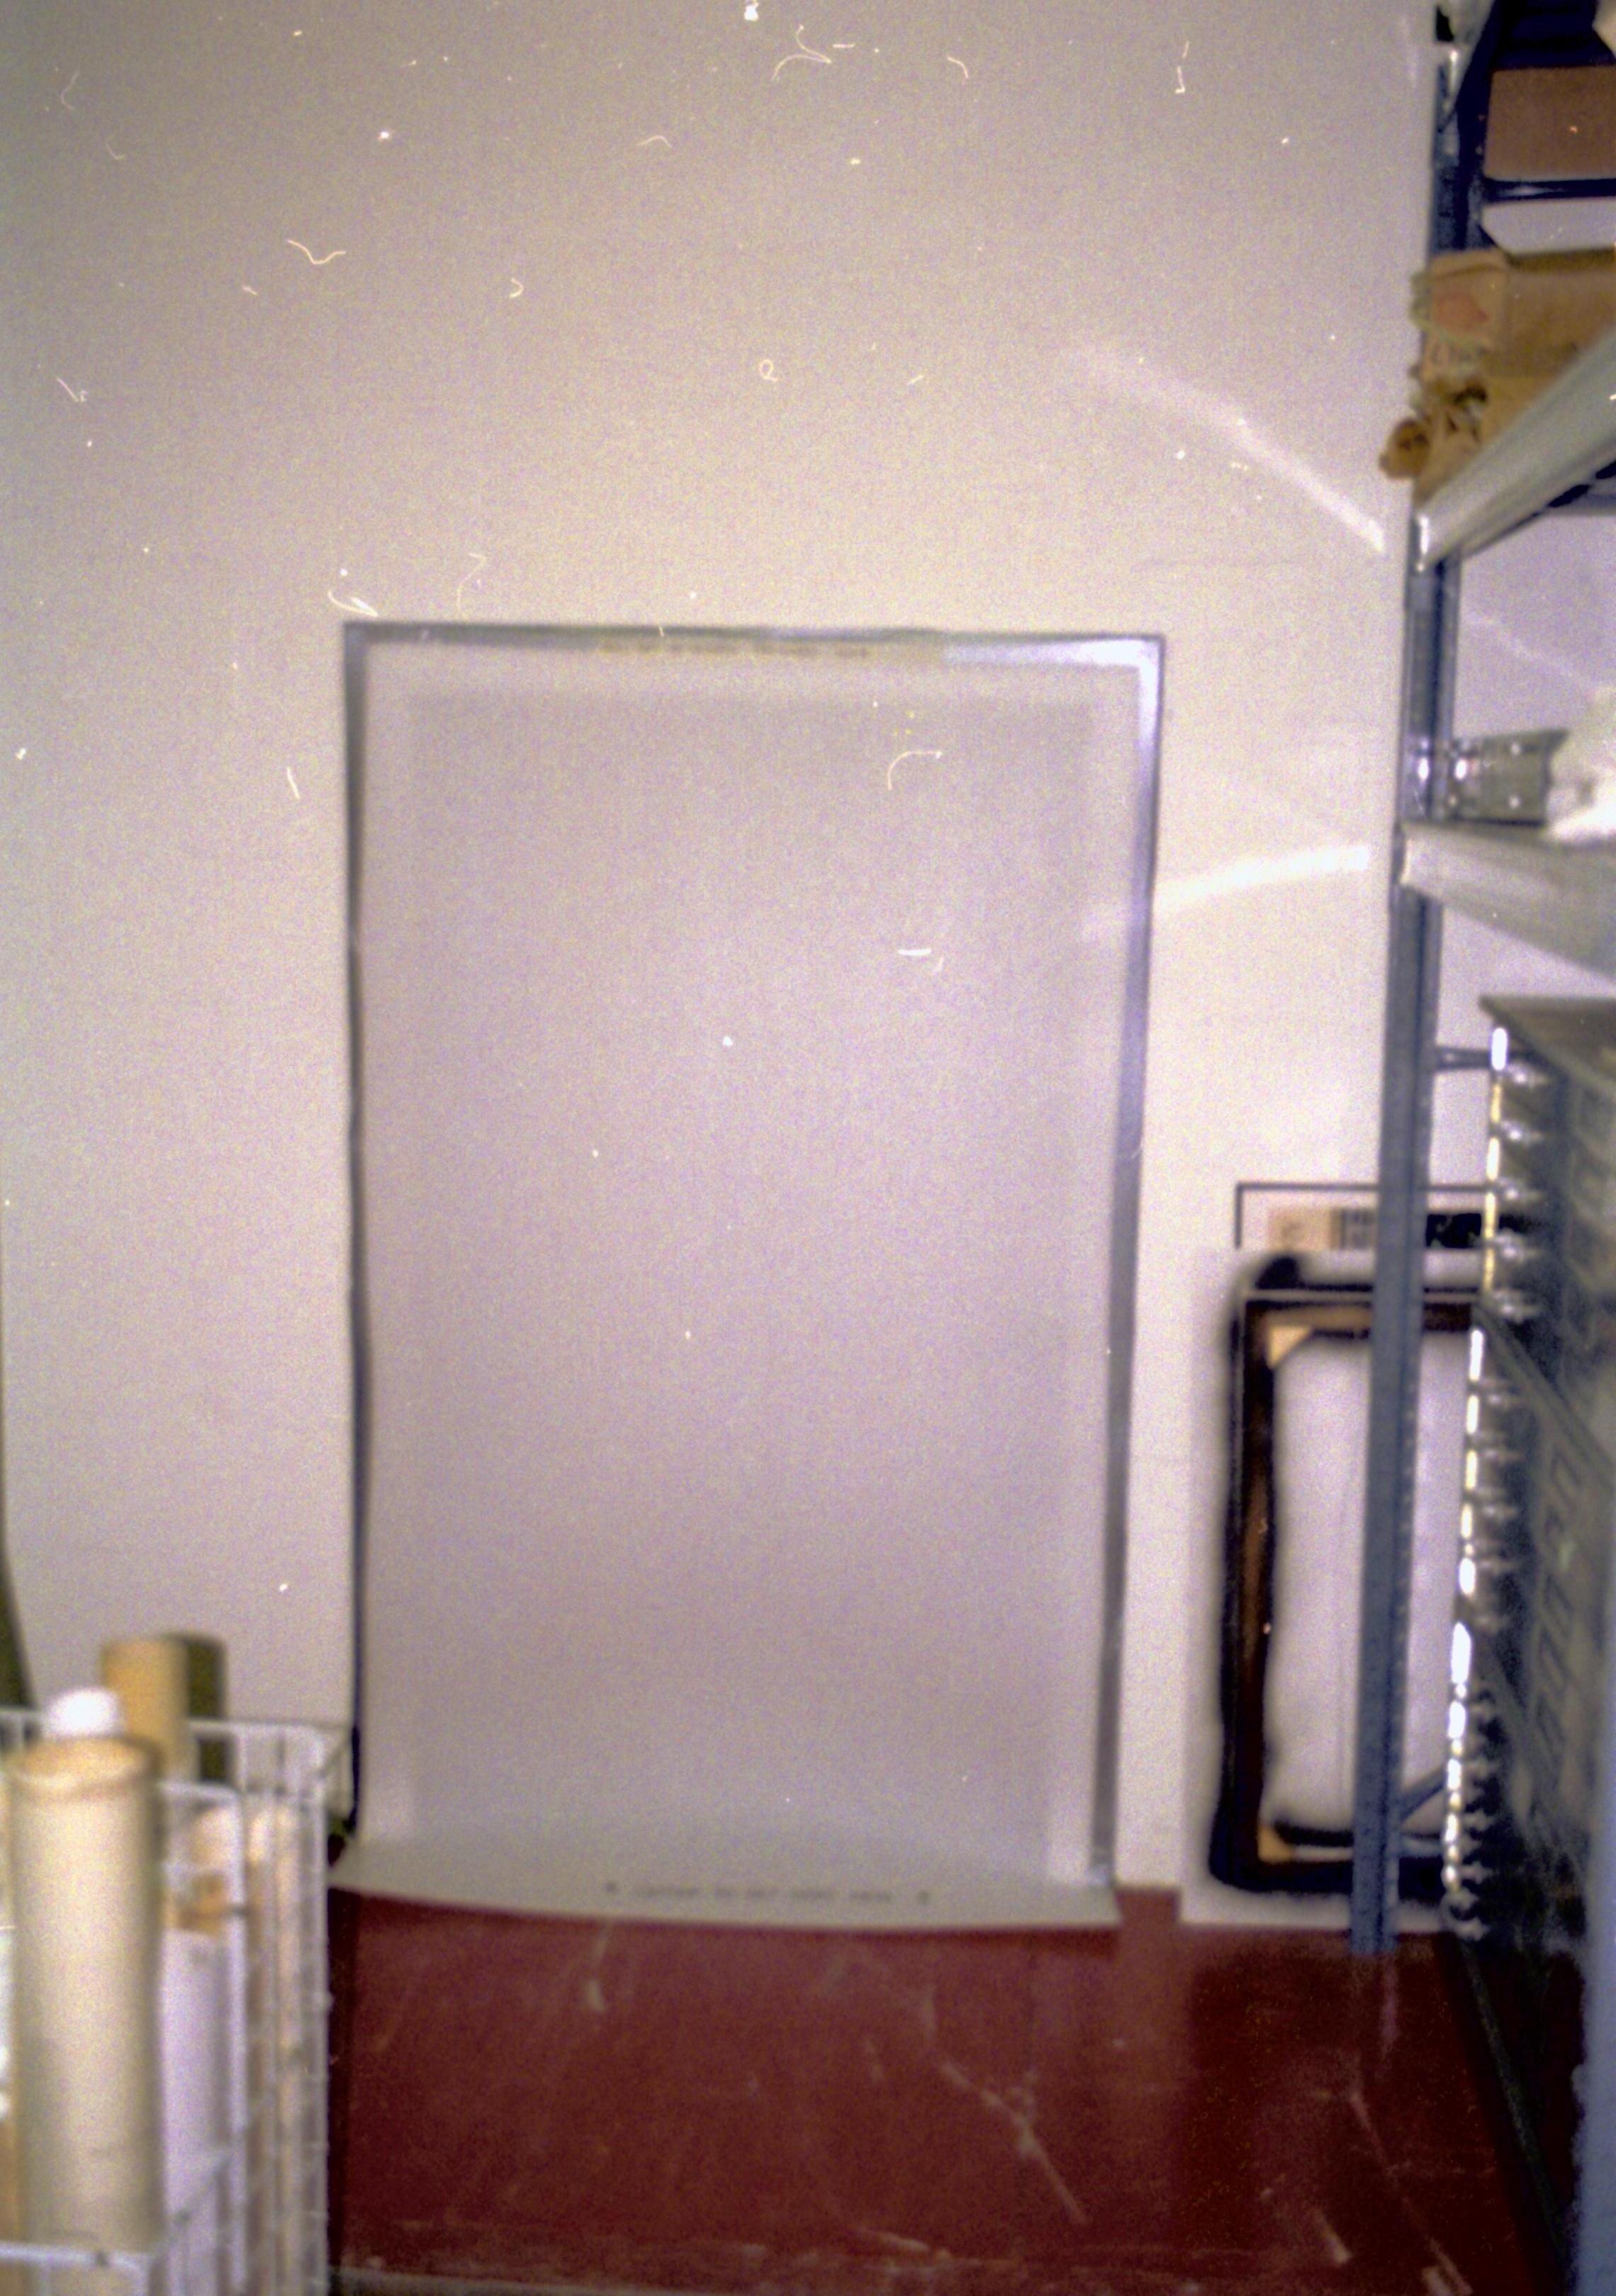 Dean House storage area Lincoln Home NHS- Dean House, Leaks in buildings, roll 1999-1, N17 Dean House, leaks